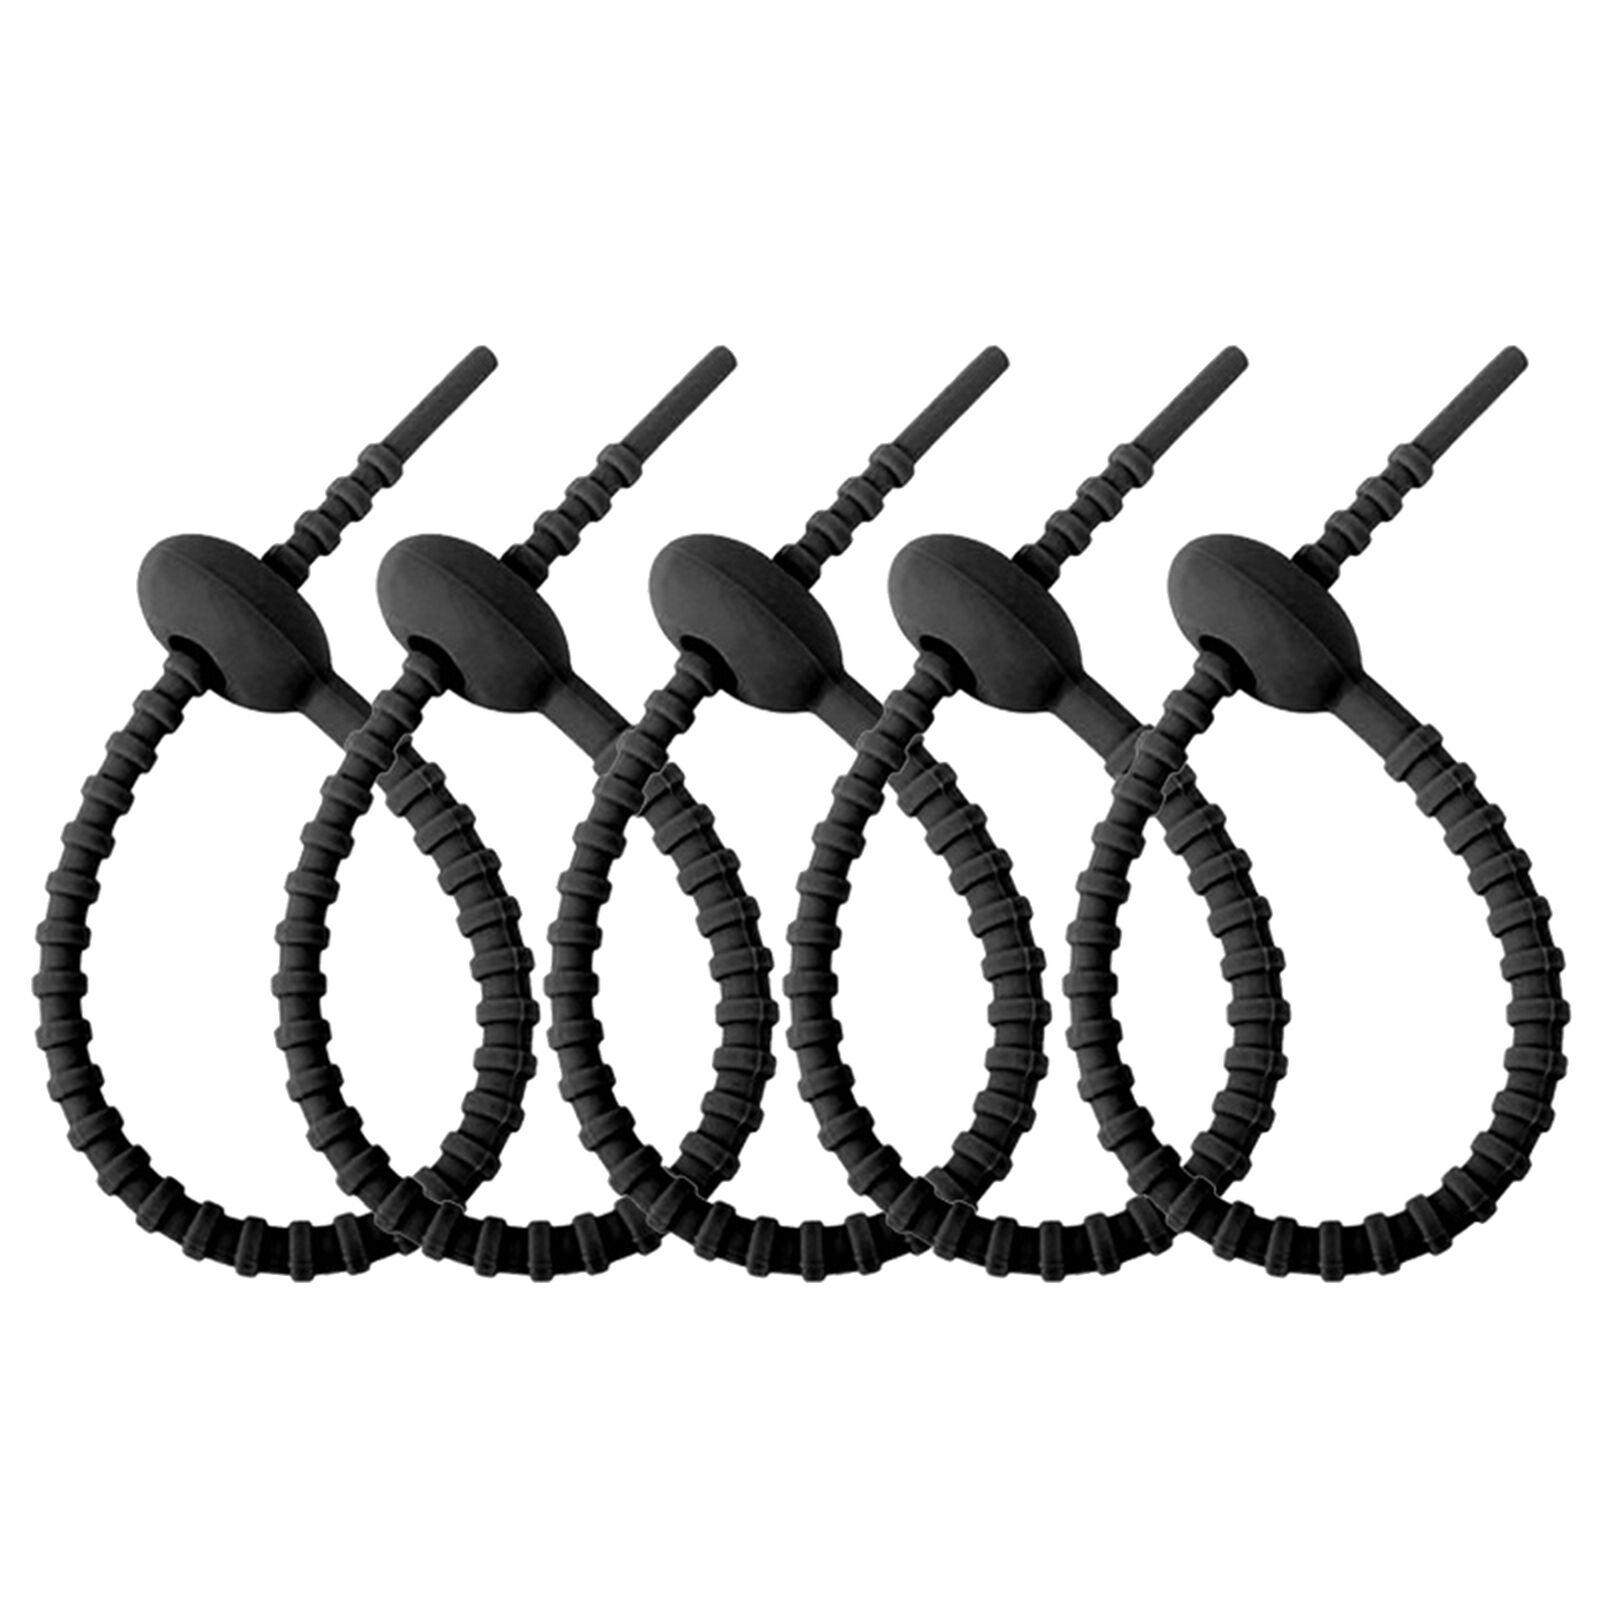 10pcs Silicone Zip Ties Bag Ties Multi Purpose Elastic Charging Cable Organizer